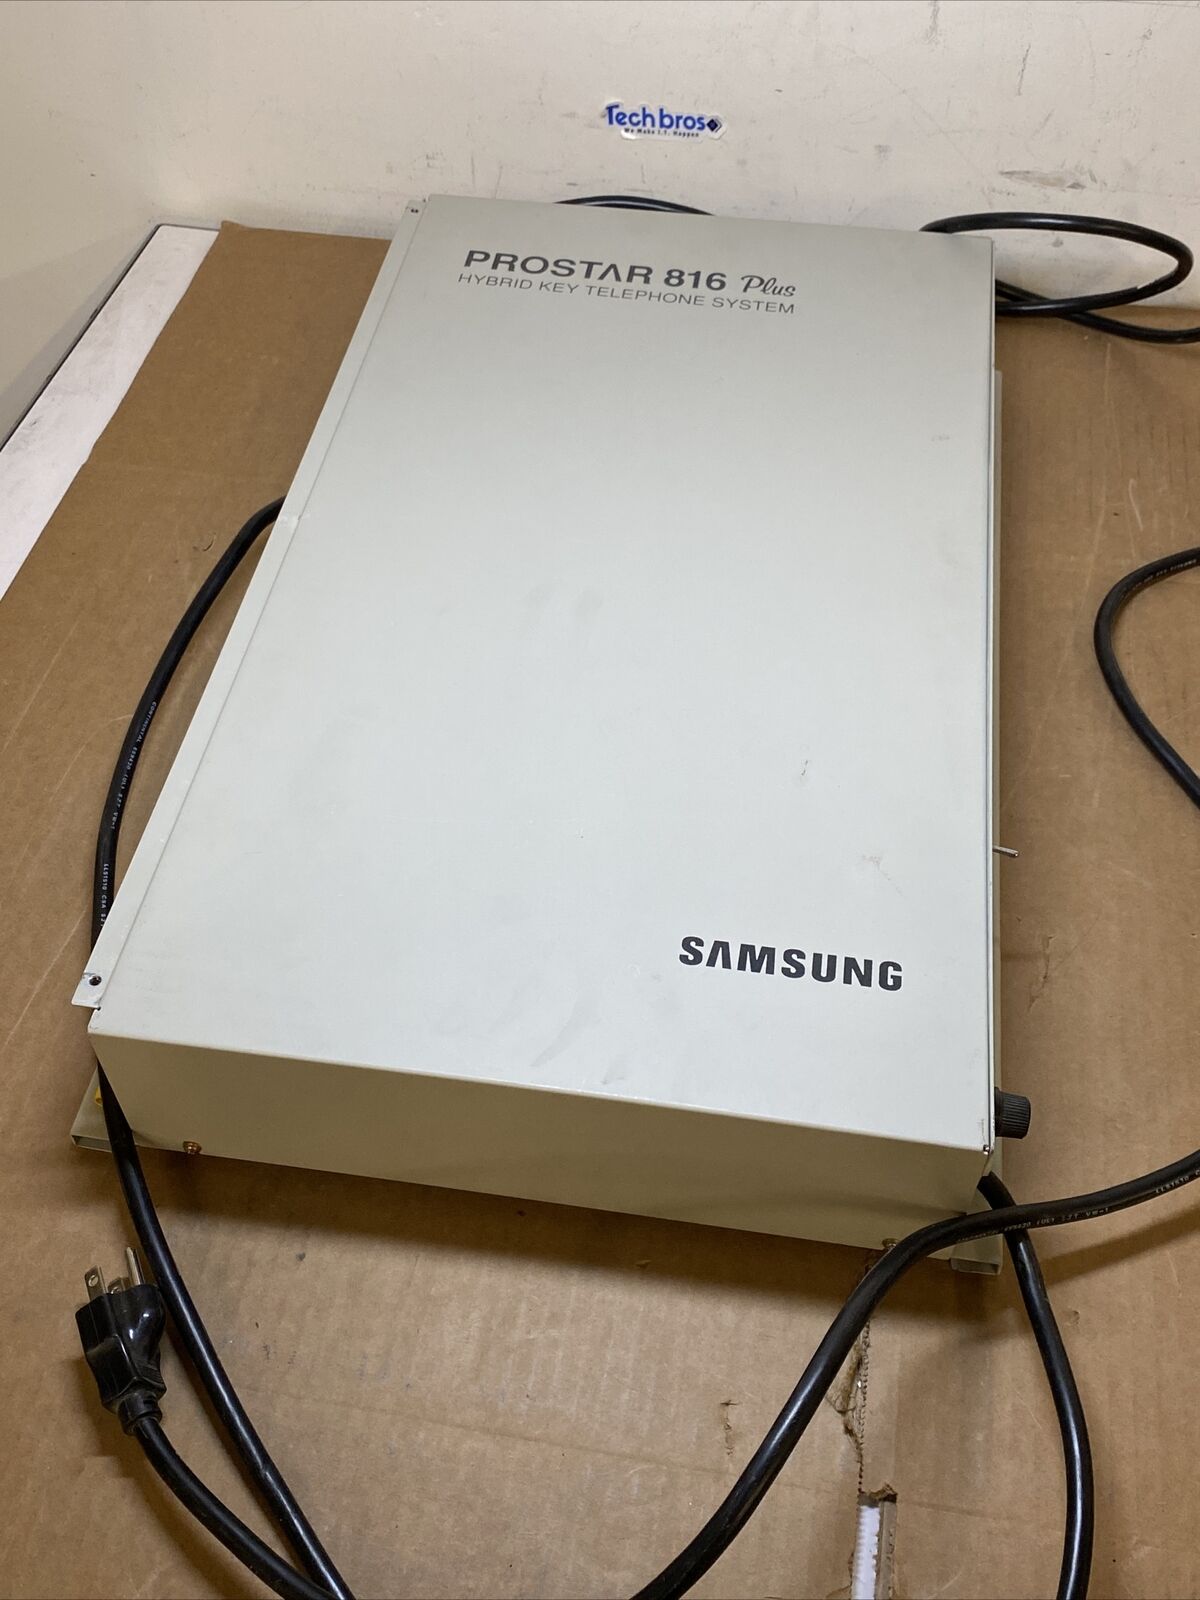 Samsung Prostar 816 Plus Hybrid Key Telephone System